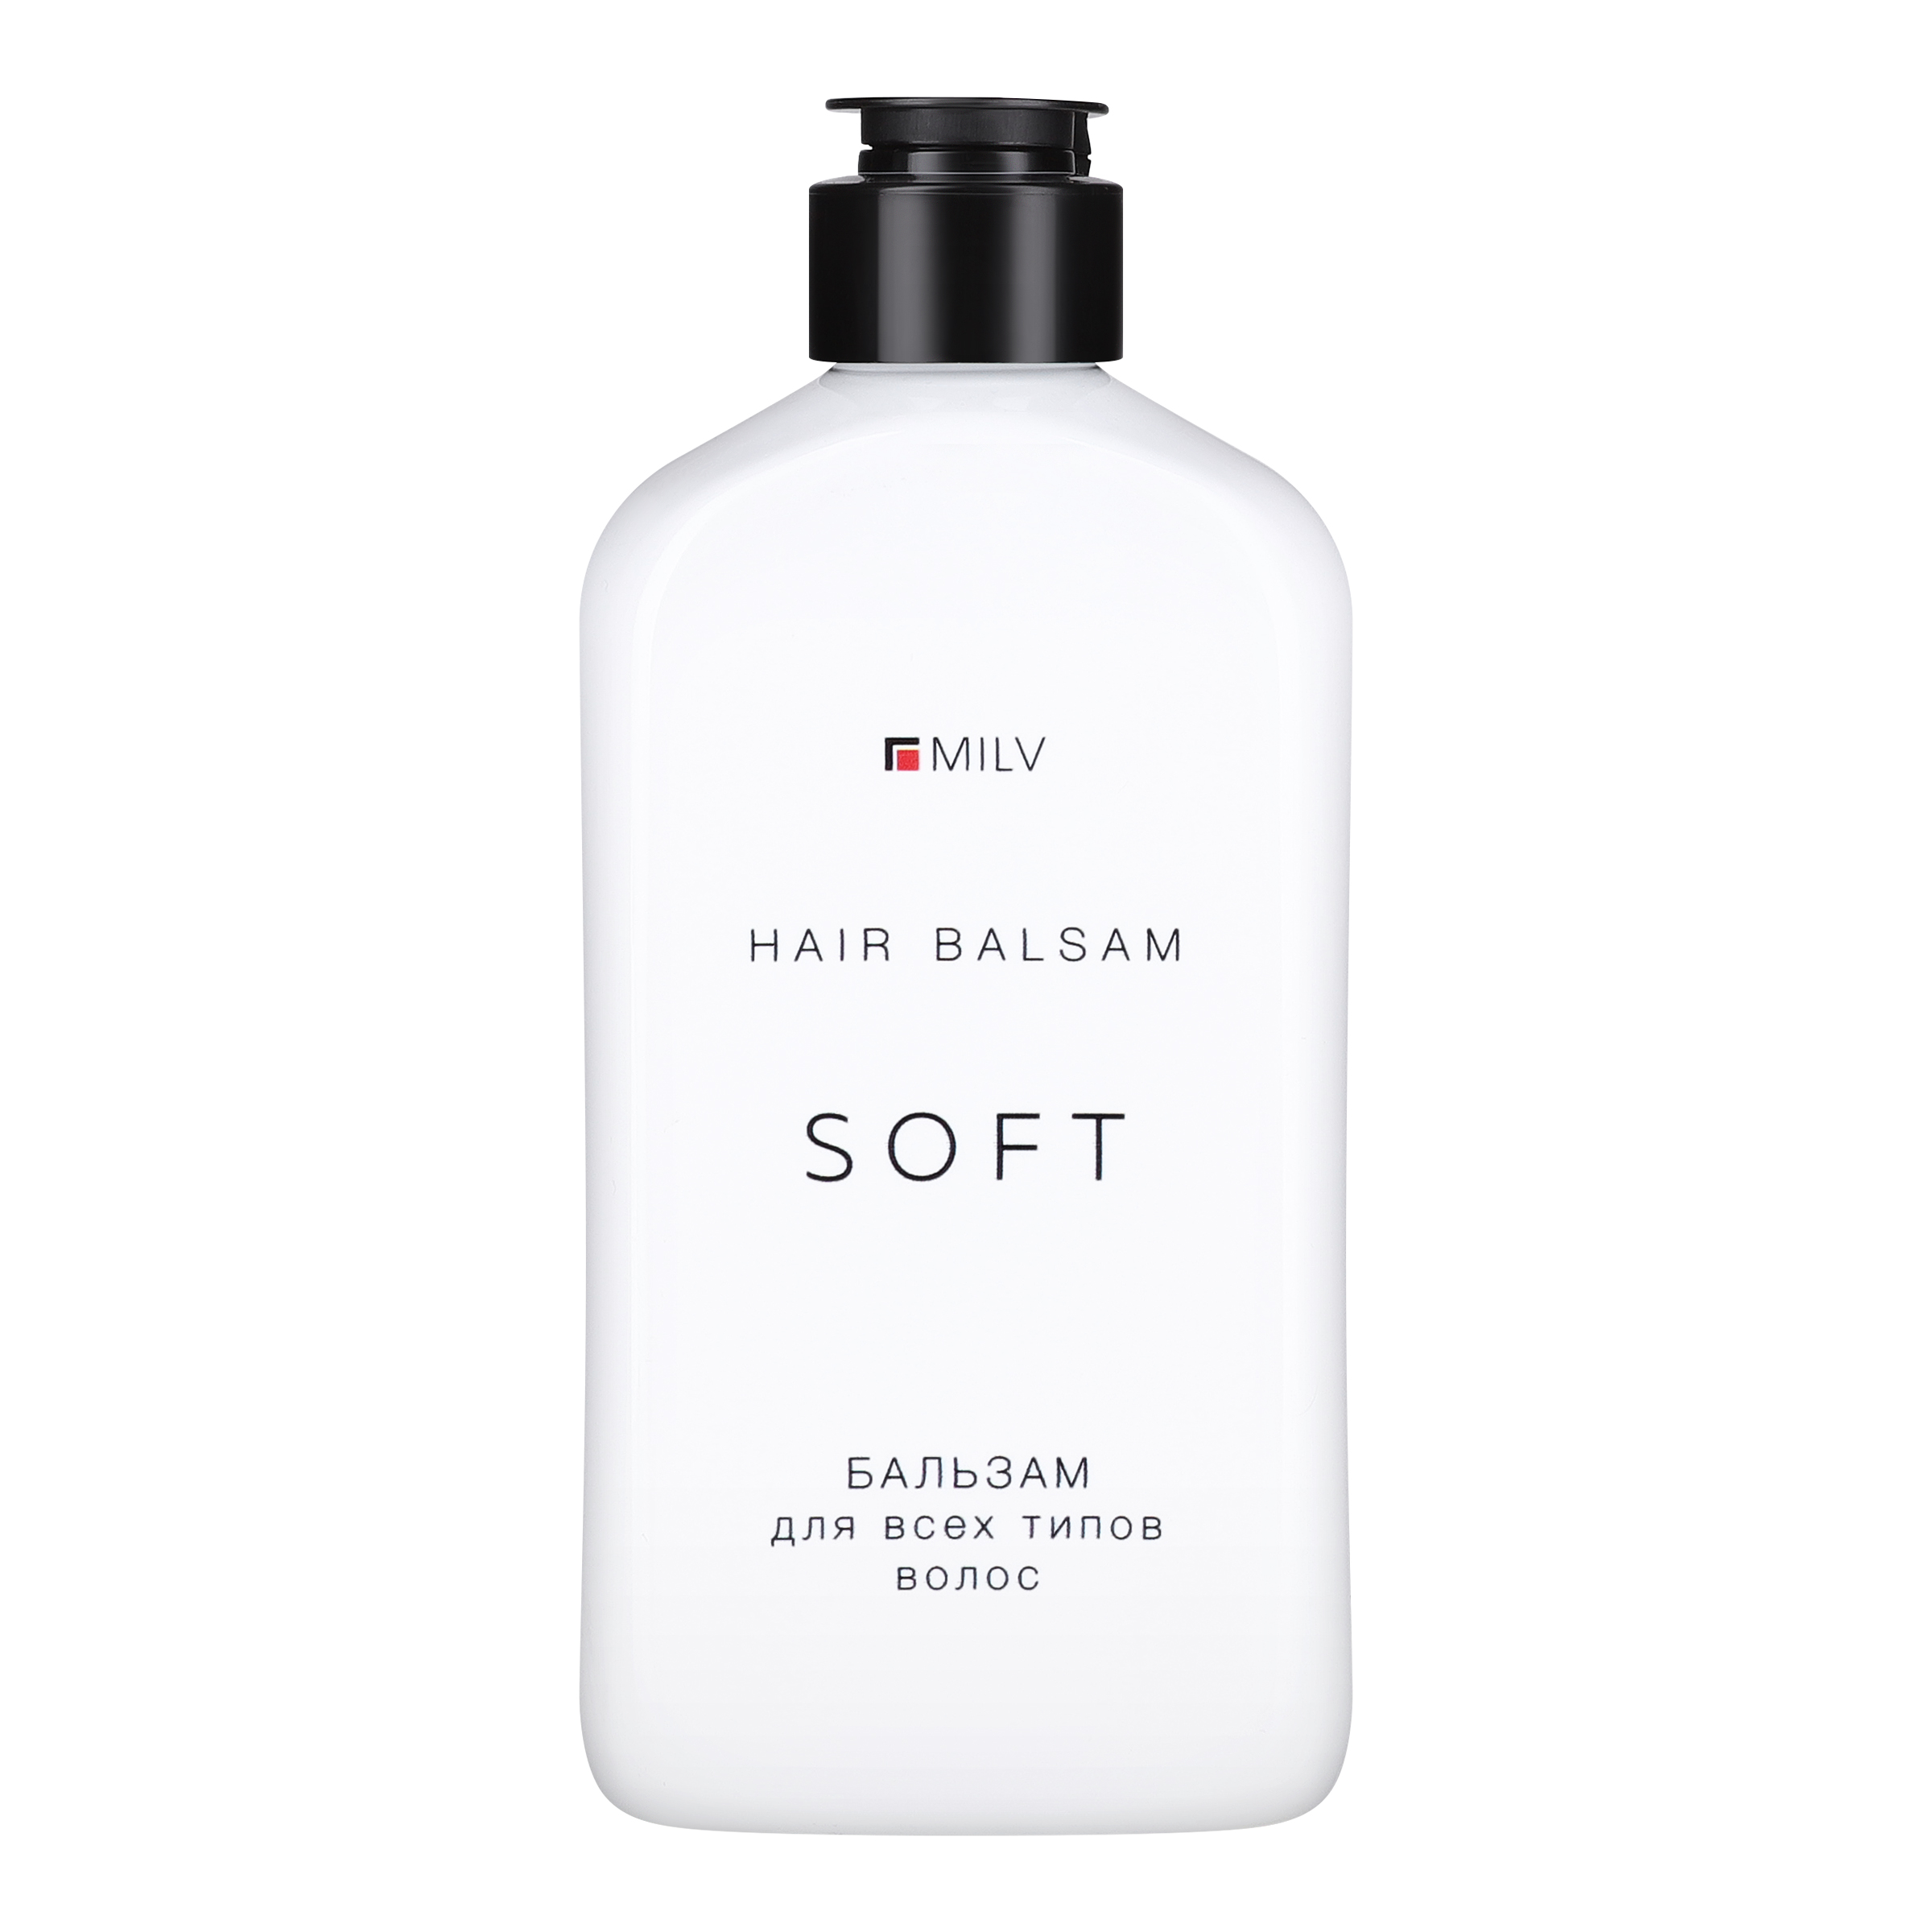 Мягкий бальзам Milv SOFT для всех типов волос 340 мл